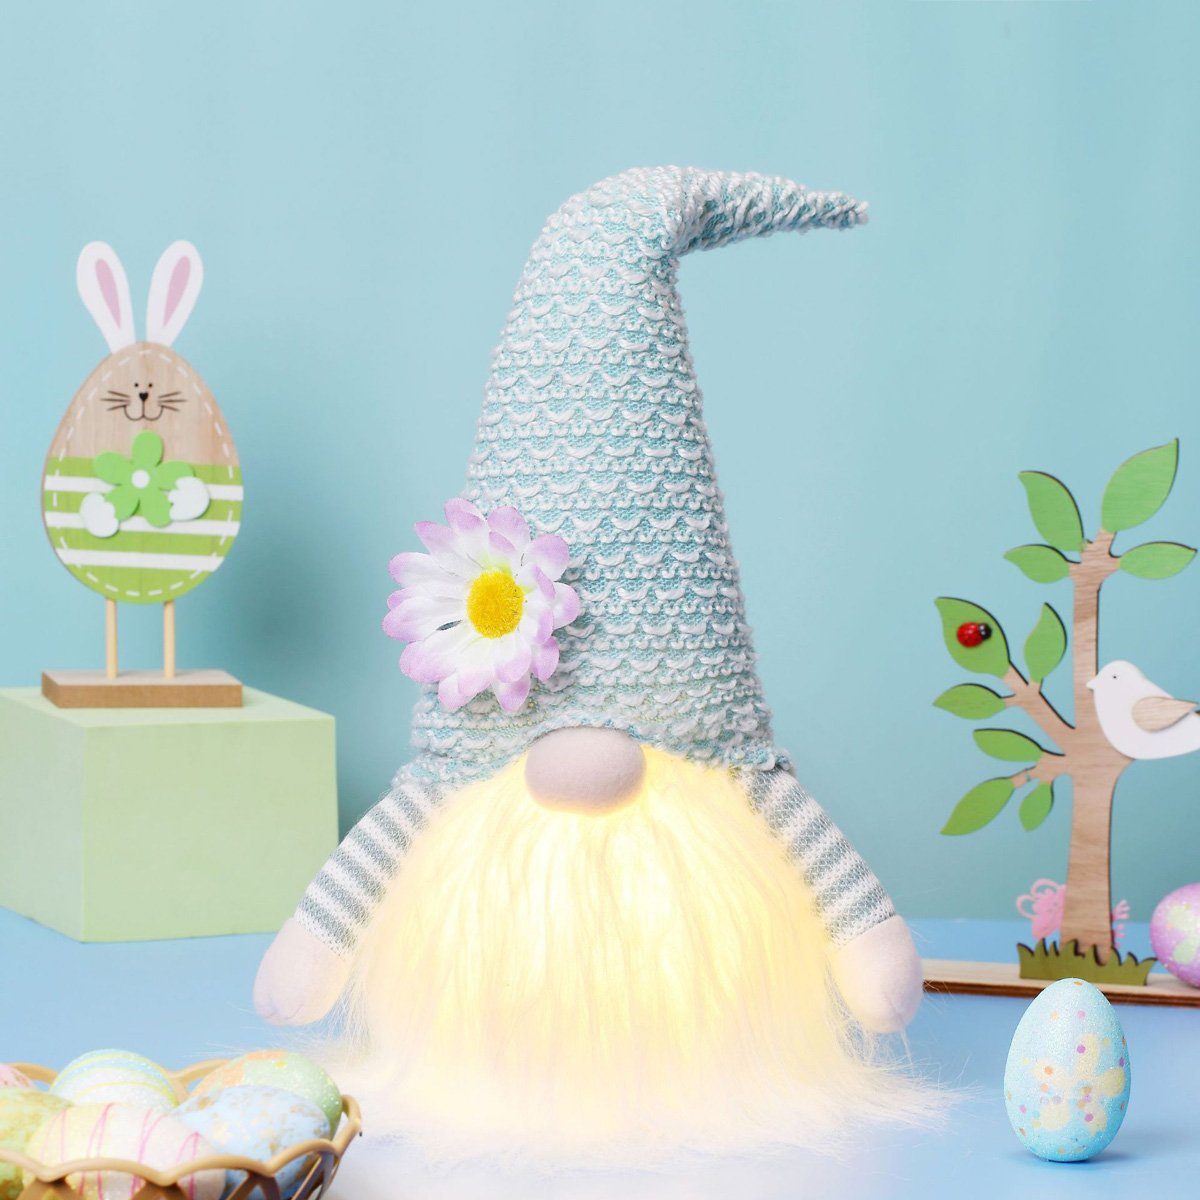 yozhiqu Osterhase Ostern LED beleuchteter Hase, gesichtslose Plüschpuppe Ornament, Weich,leicht zu reinigen,DIY-Dekoration,für eine festliche Atmosphäre